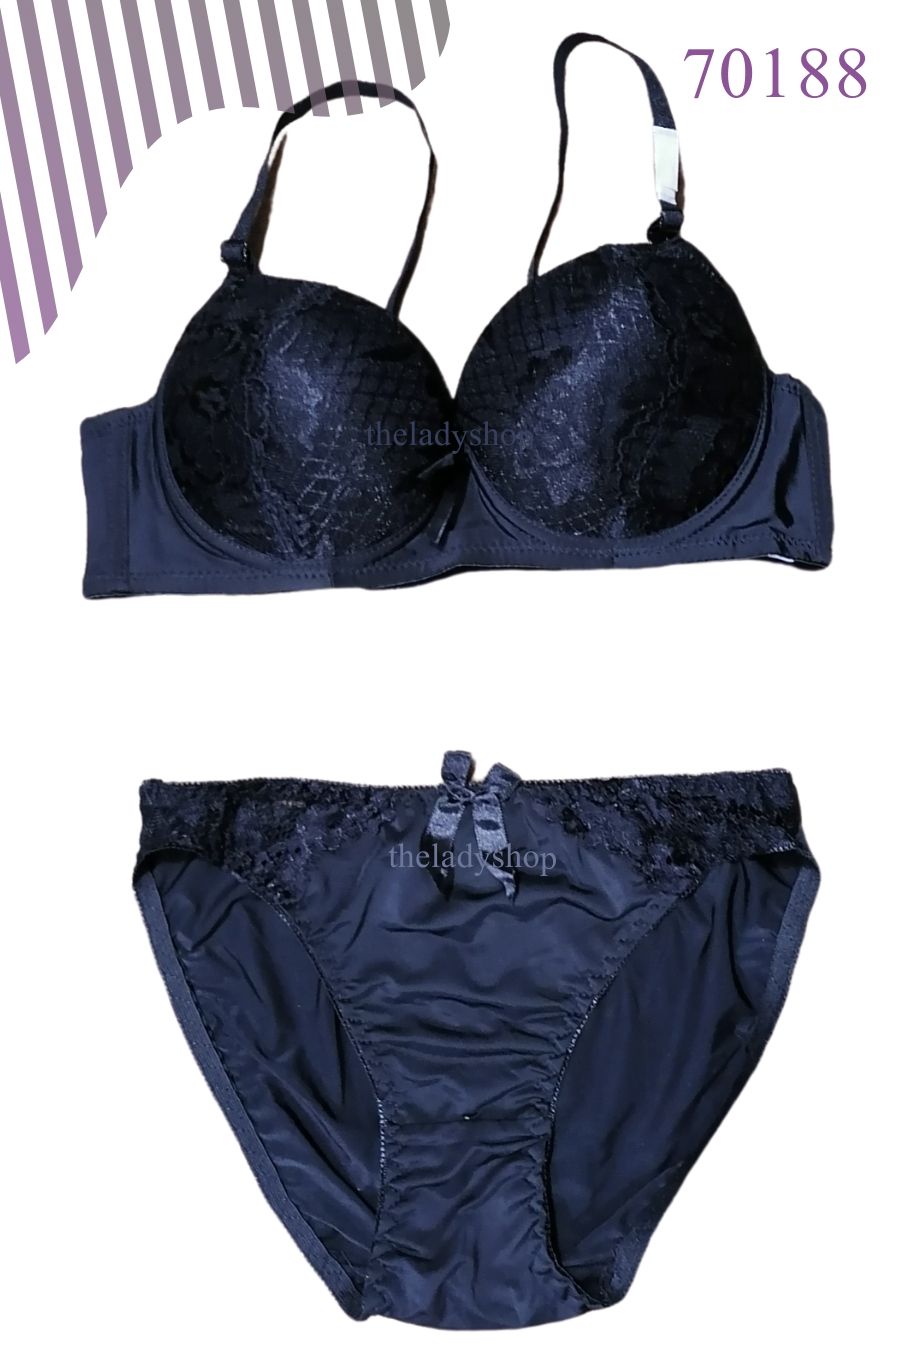 2pc fancy quality lace on top bra & panty set - Black